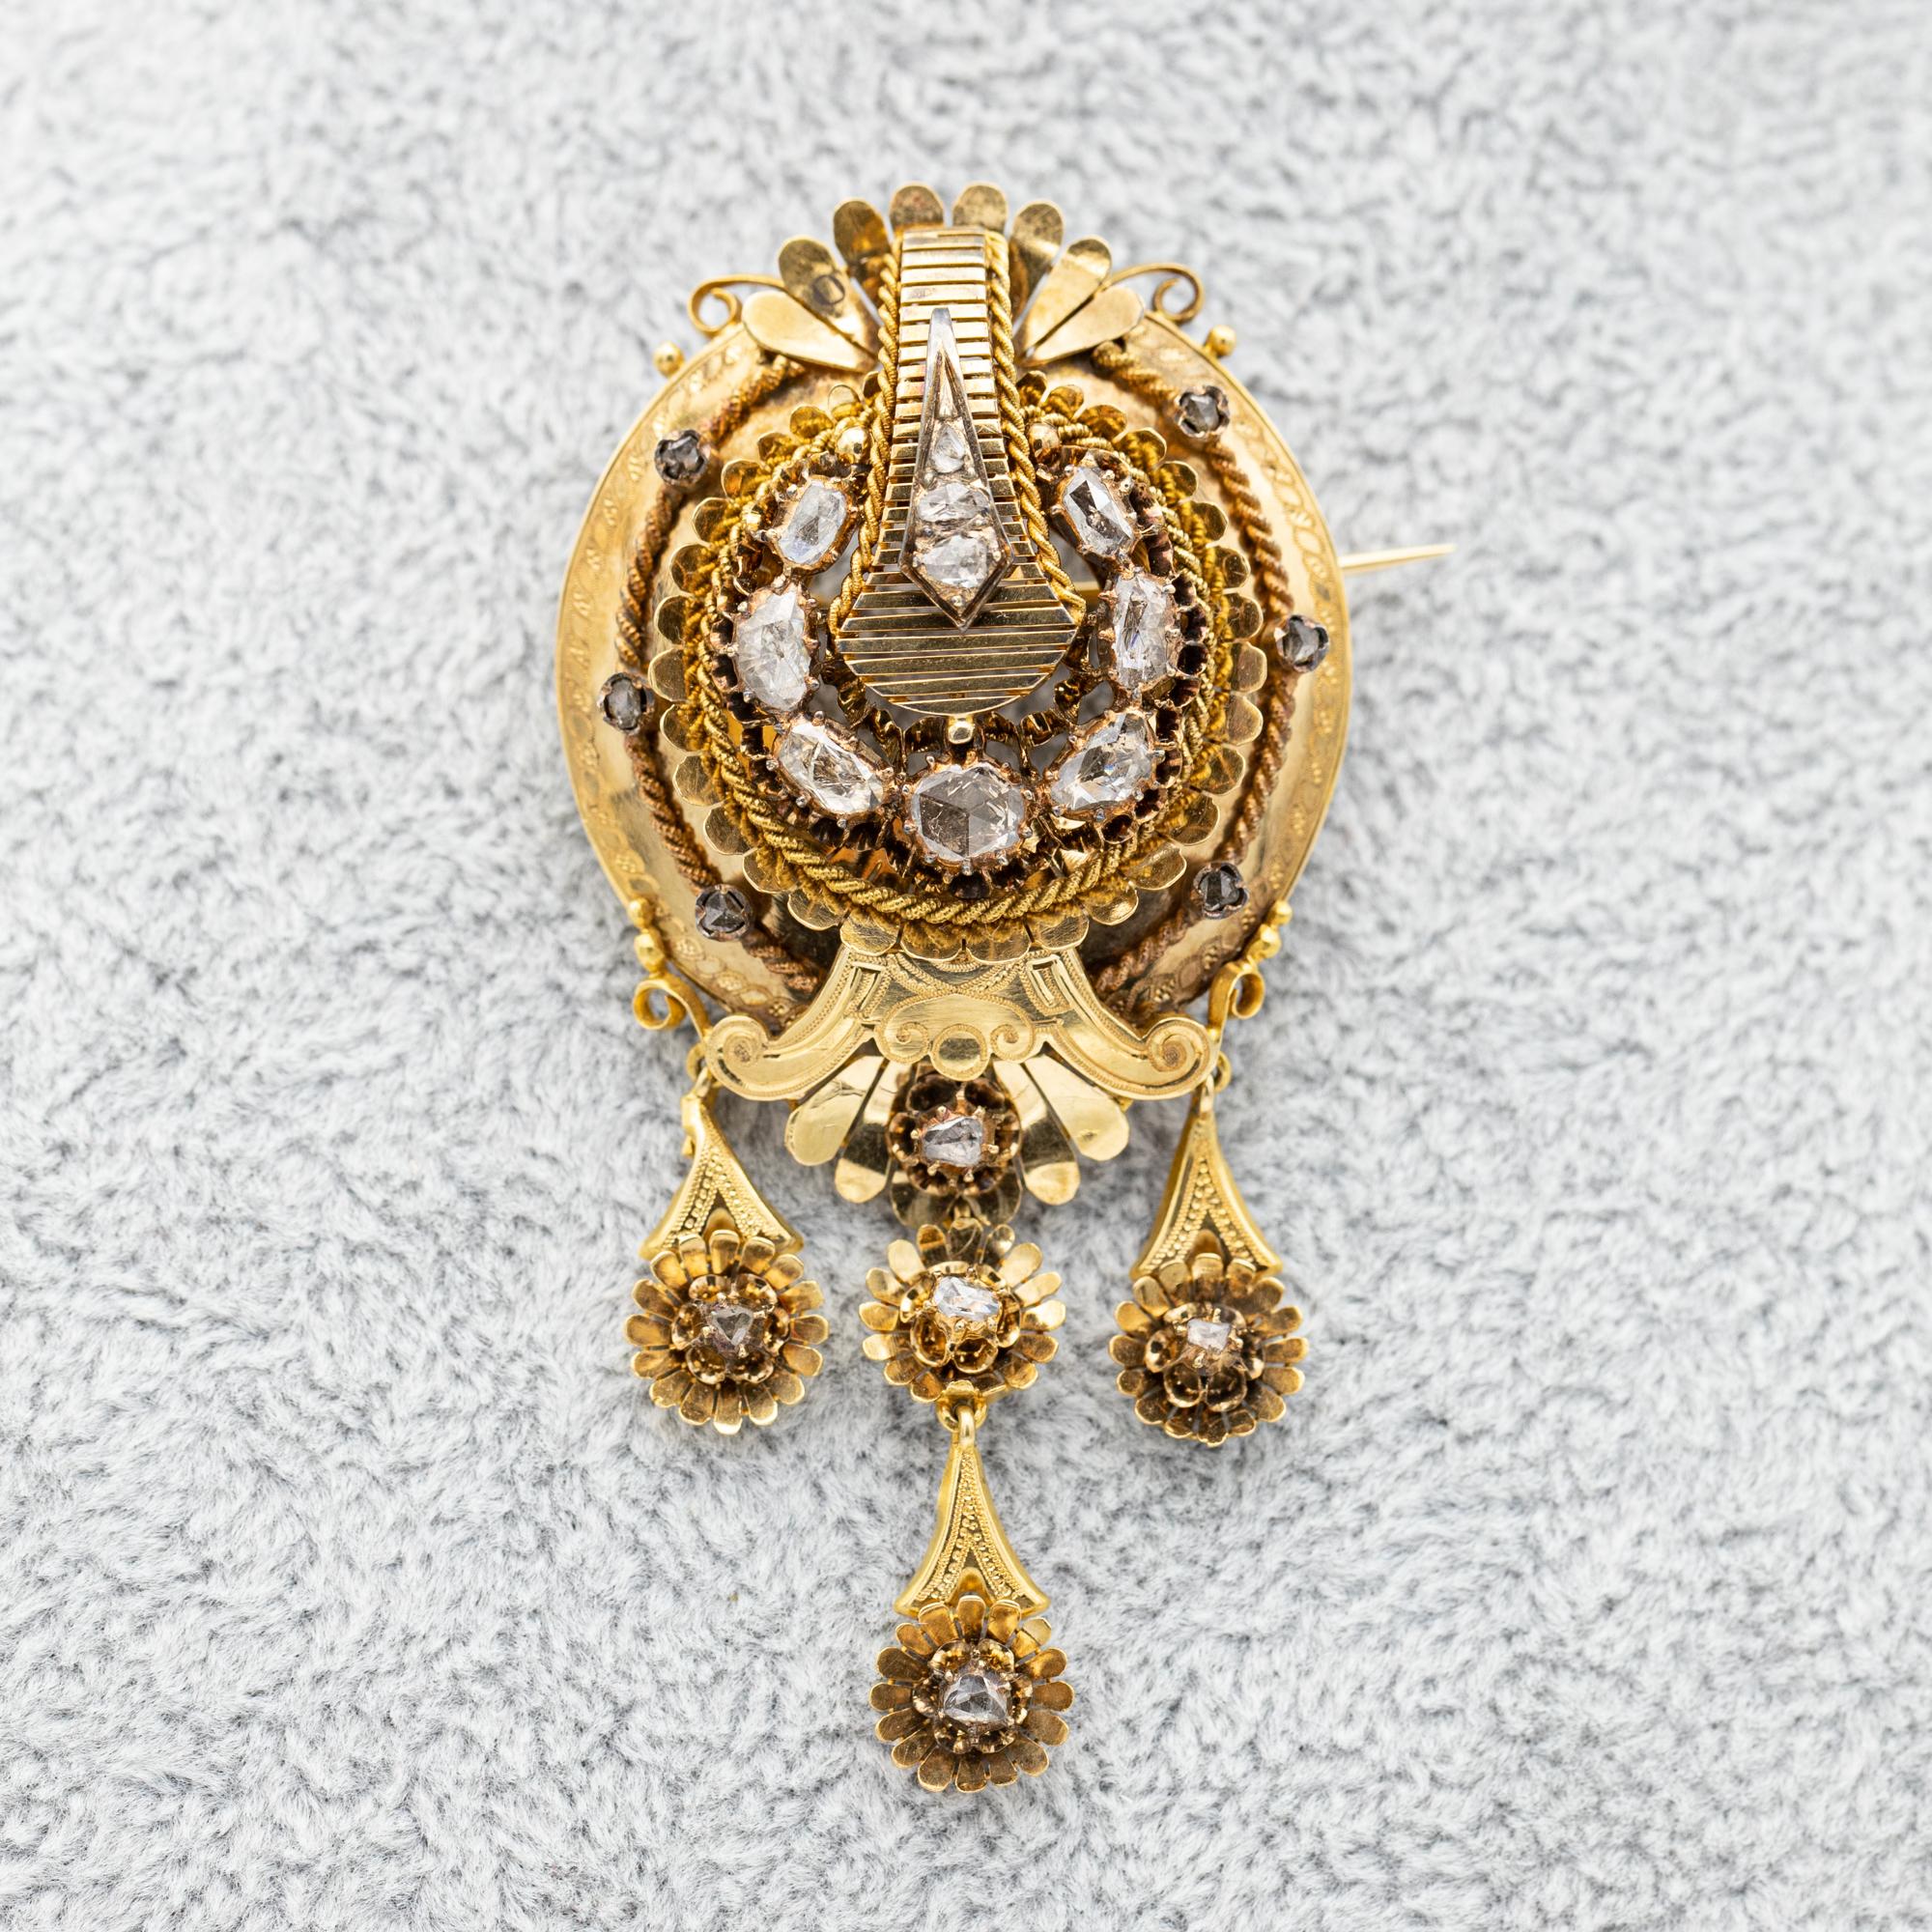 Cette magnifique broche victorienne est à vendre. Cette broche royale en diamant a vraisemblablement été fabriquée en Belgique ou en France au milieu du XIXe siècle. Il est serti de diamants taille rose de taille exceptionnelle. Ces magnifiques